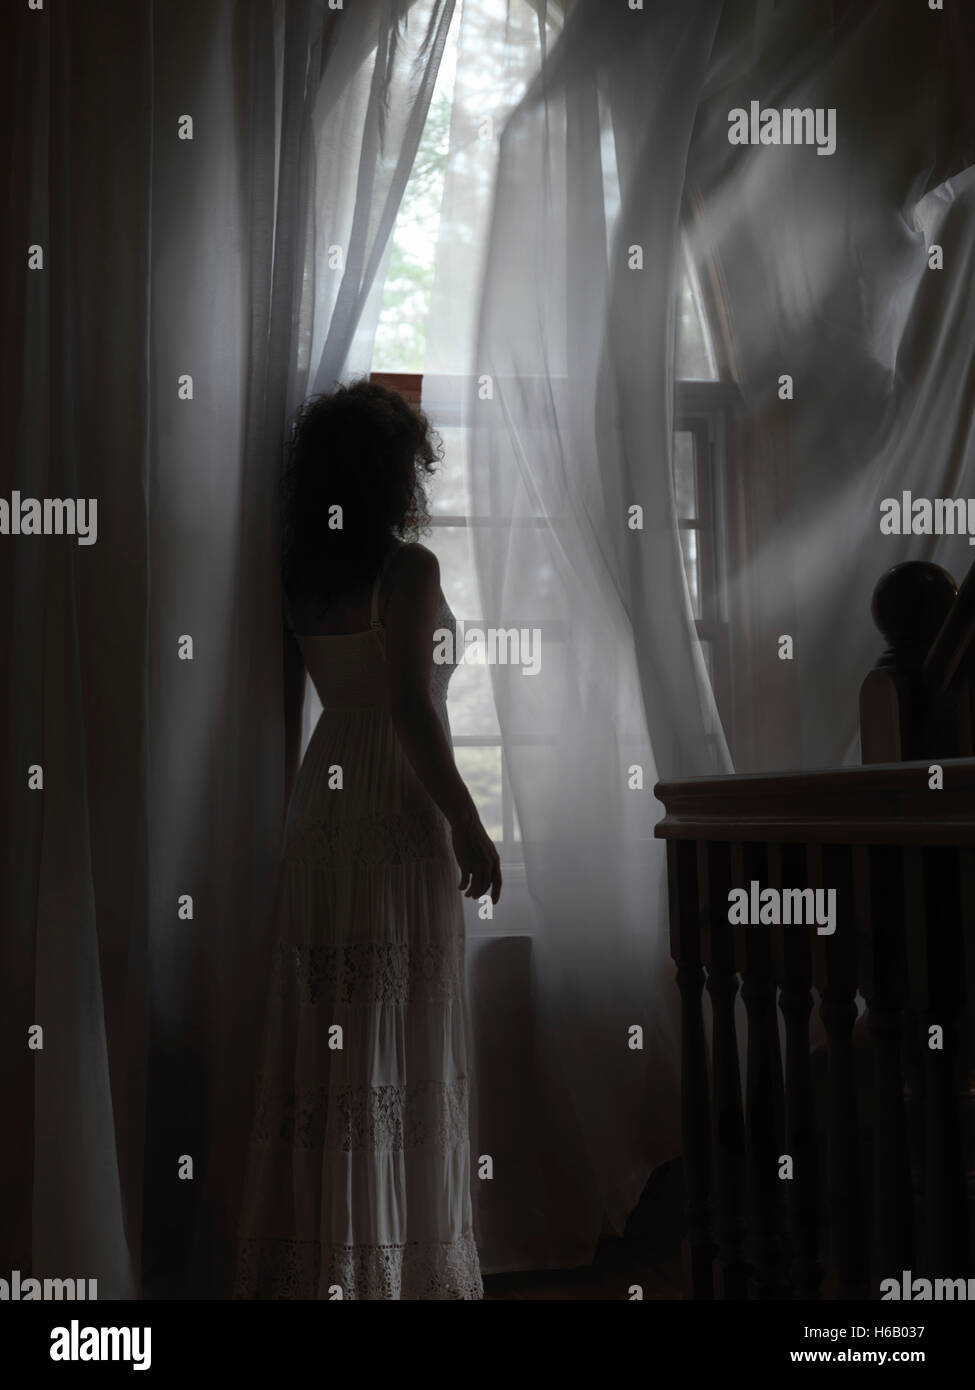 Licencia e impresiones en MaximImages.com - Mujer joven en un vestido blanco parado junto a una ventana con volar en las cortinas del viento en una habitación oscura de una casa Foto de stock